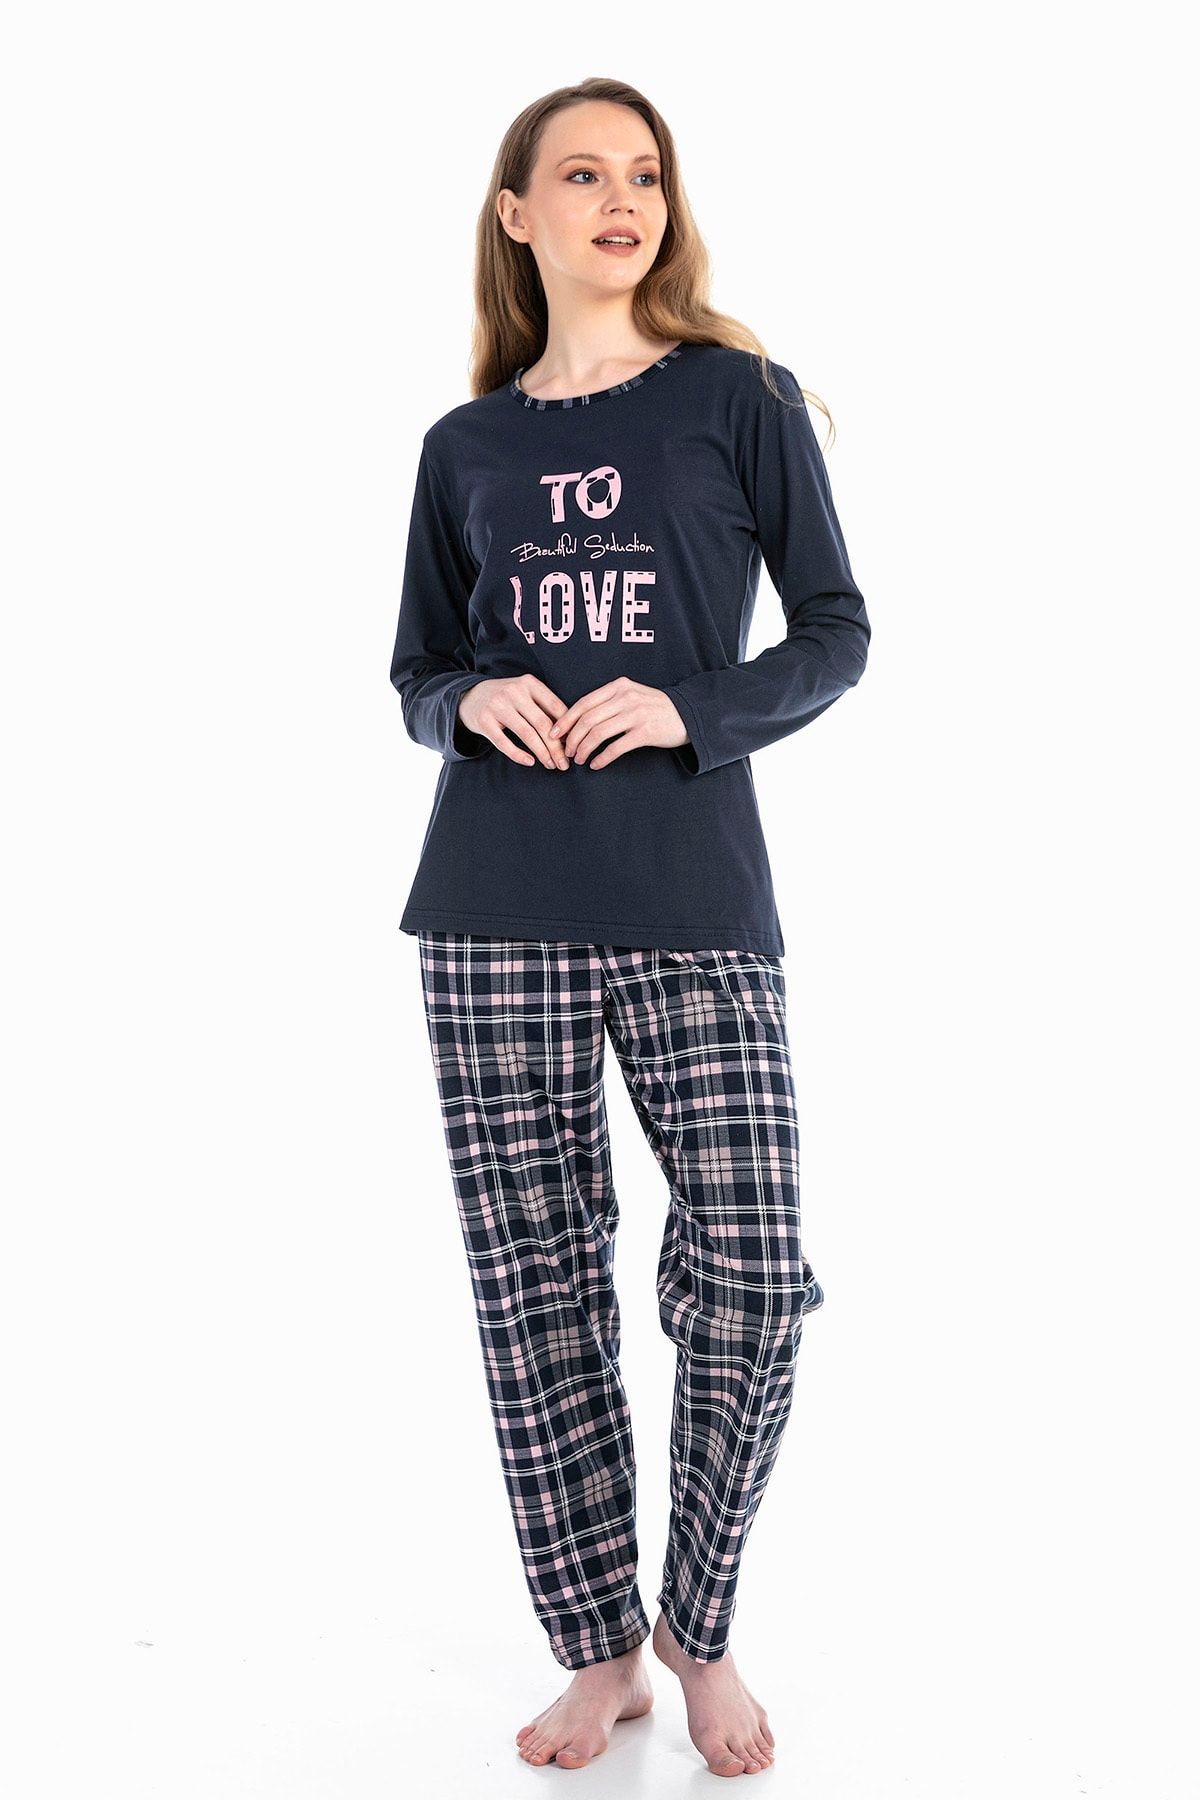 VISHENKA Kadın Love Yazı Baskılı %100 Pamuk Lacivert Renk Pijama Takımı